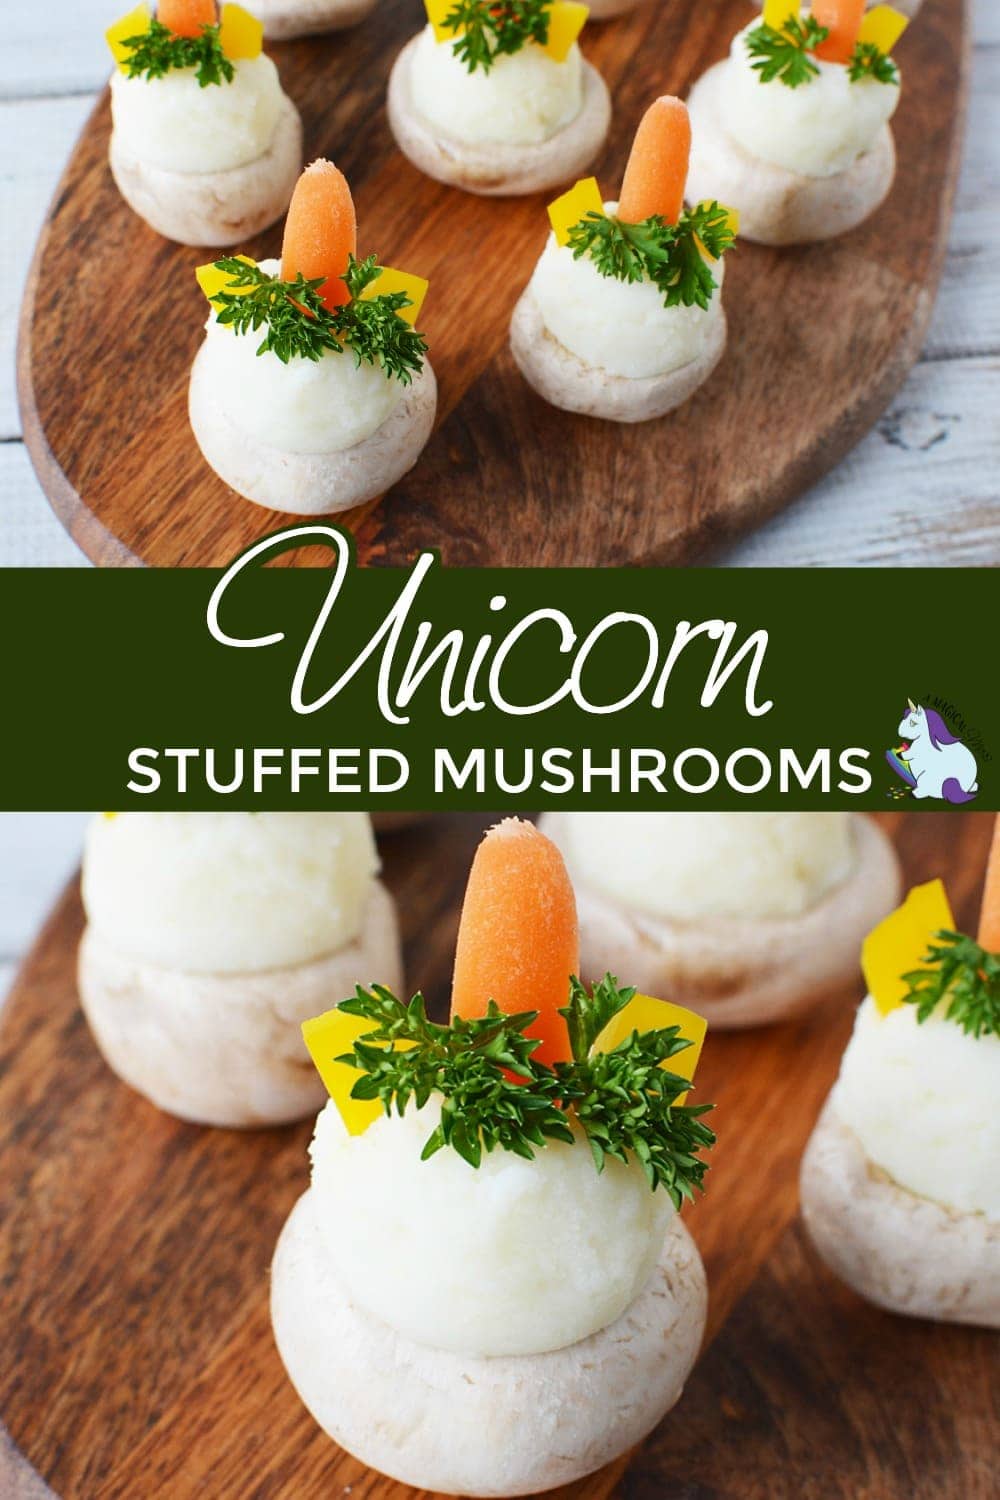 Stuffed mushrooms that look like unicorns. 